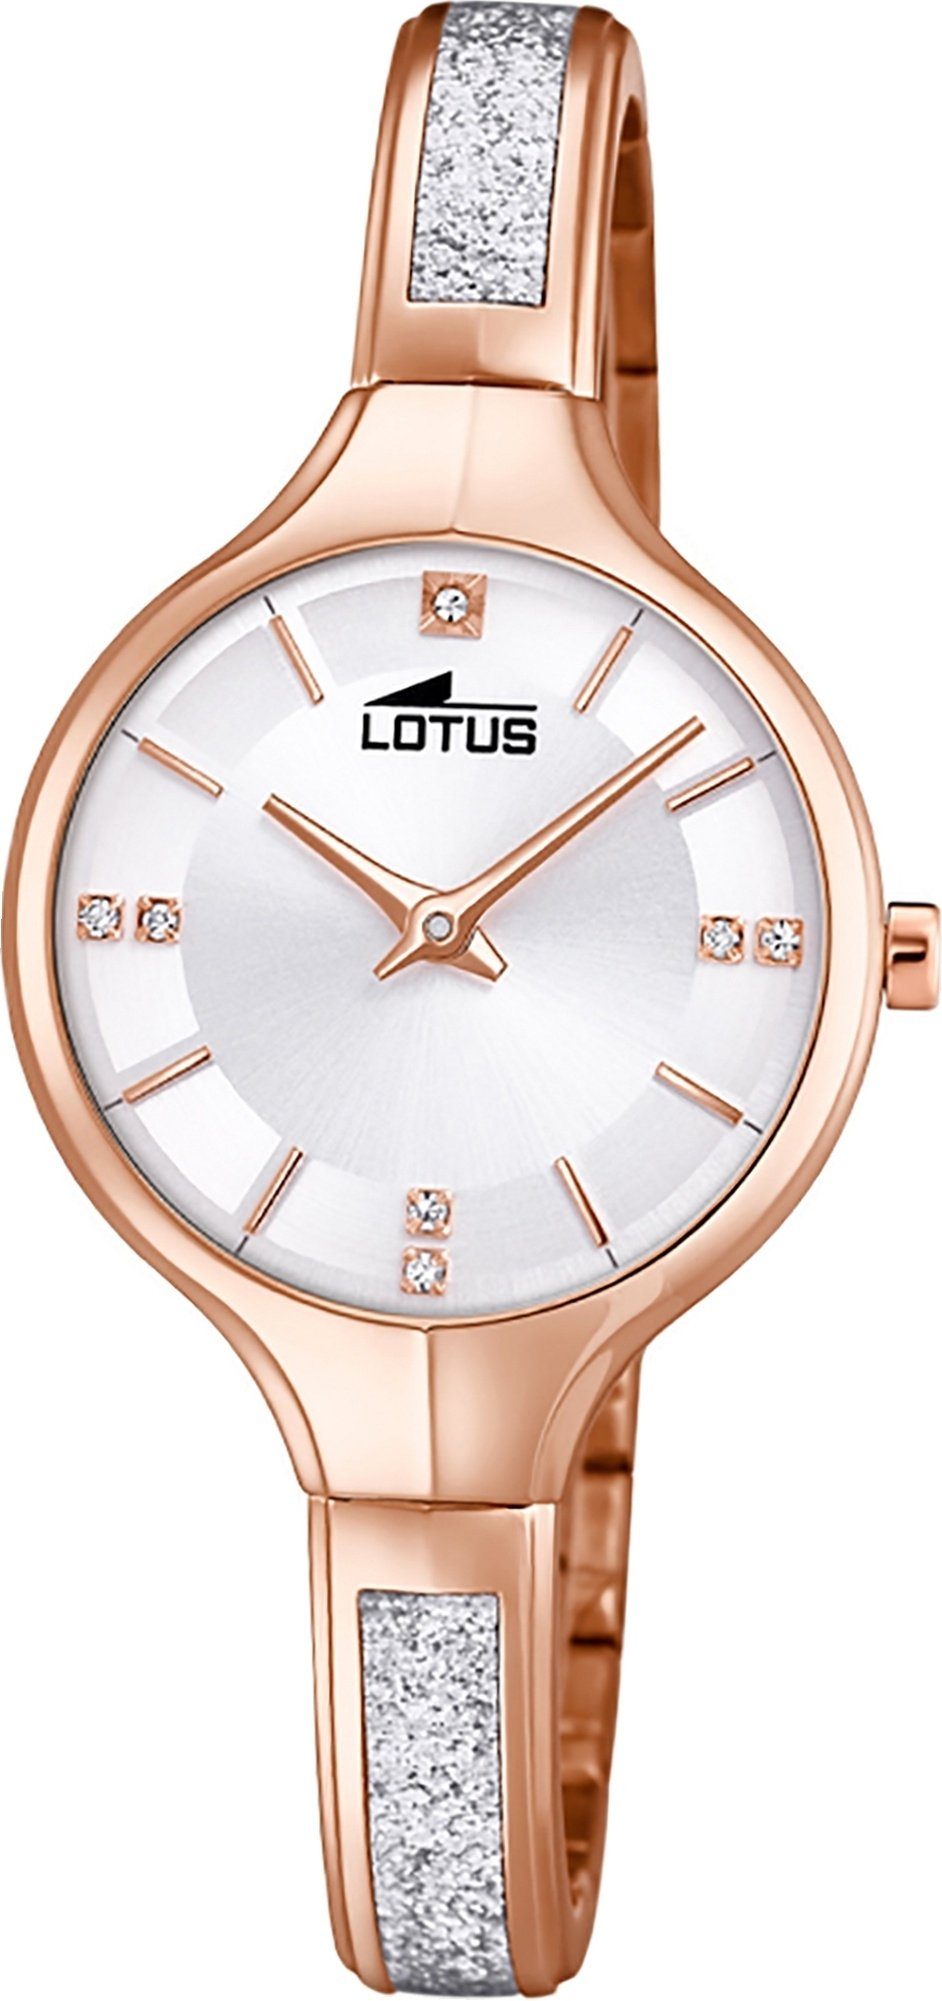 Lotus Quarzuhr LOTUS Edelstahl Damen Uhr 18596/1, Damenuhr mit Edelstahlarmband, rundes Gehäuse, klein (ca. 28mm), Fashi